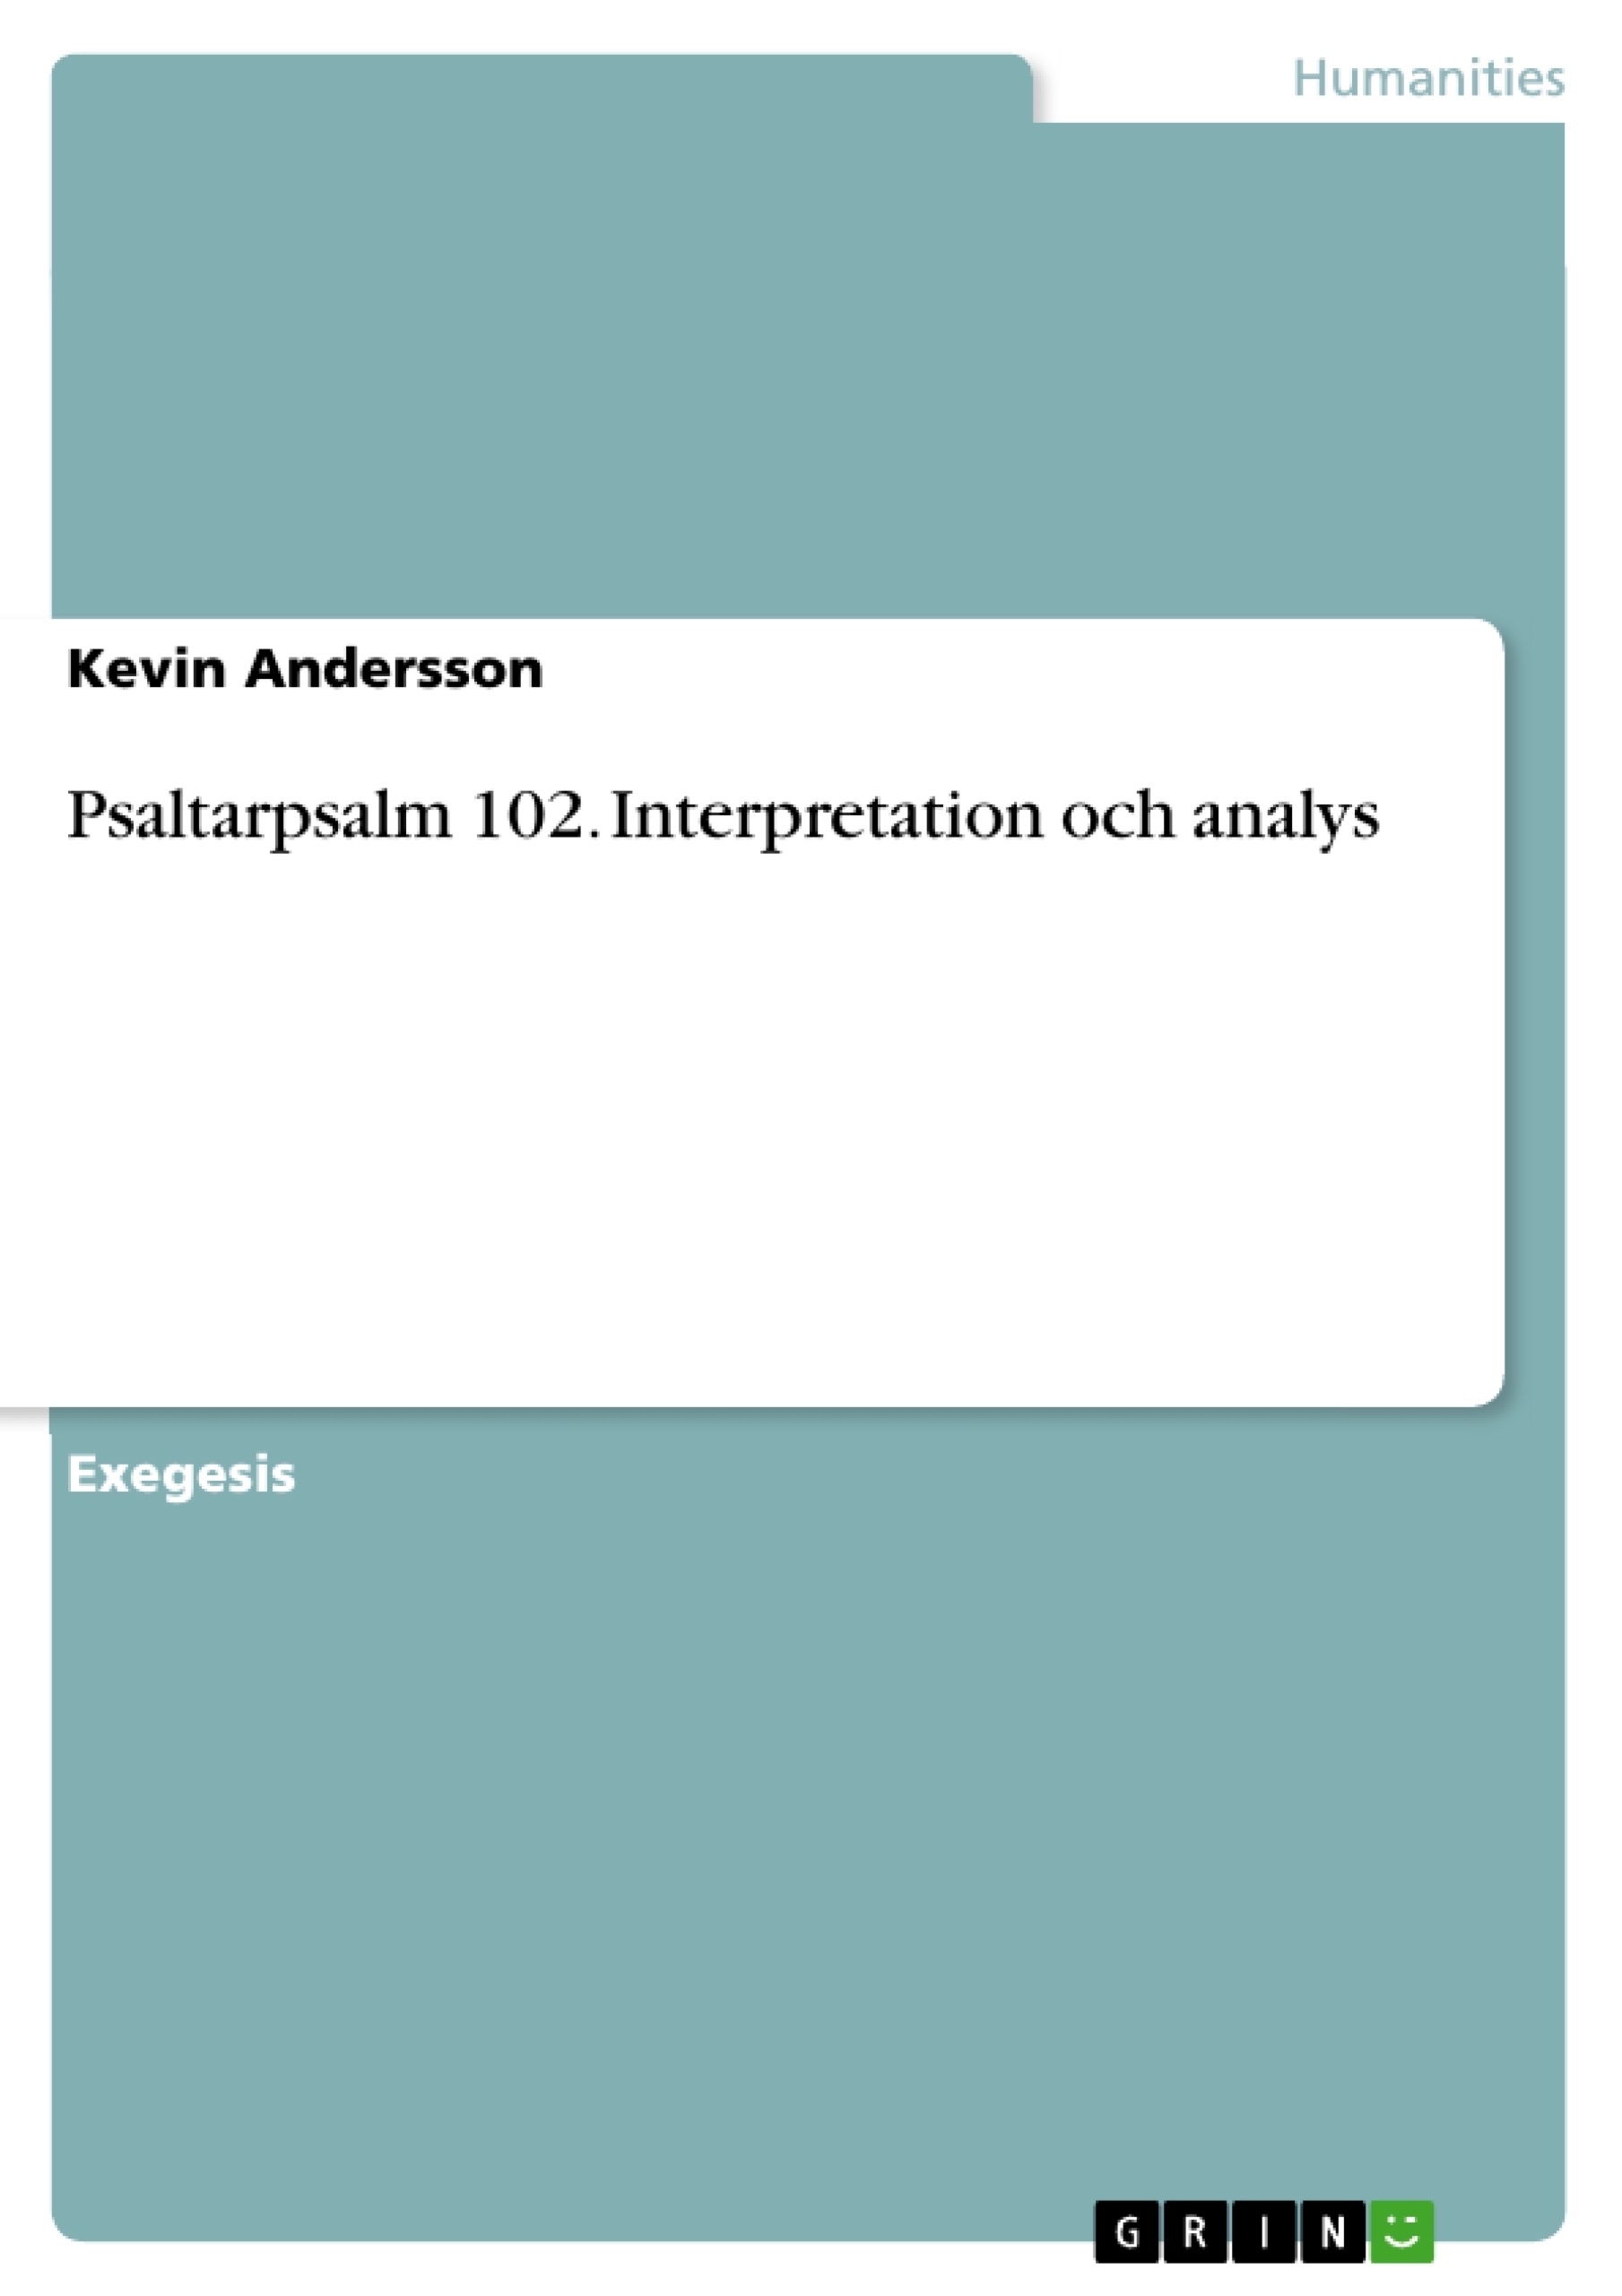 Titre: Psaltarpsalm 102. Interpretation och analys